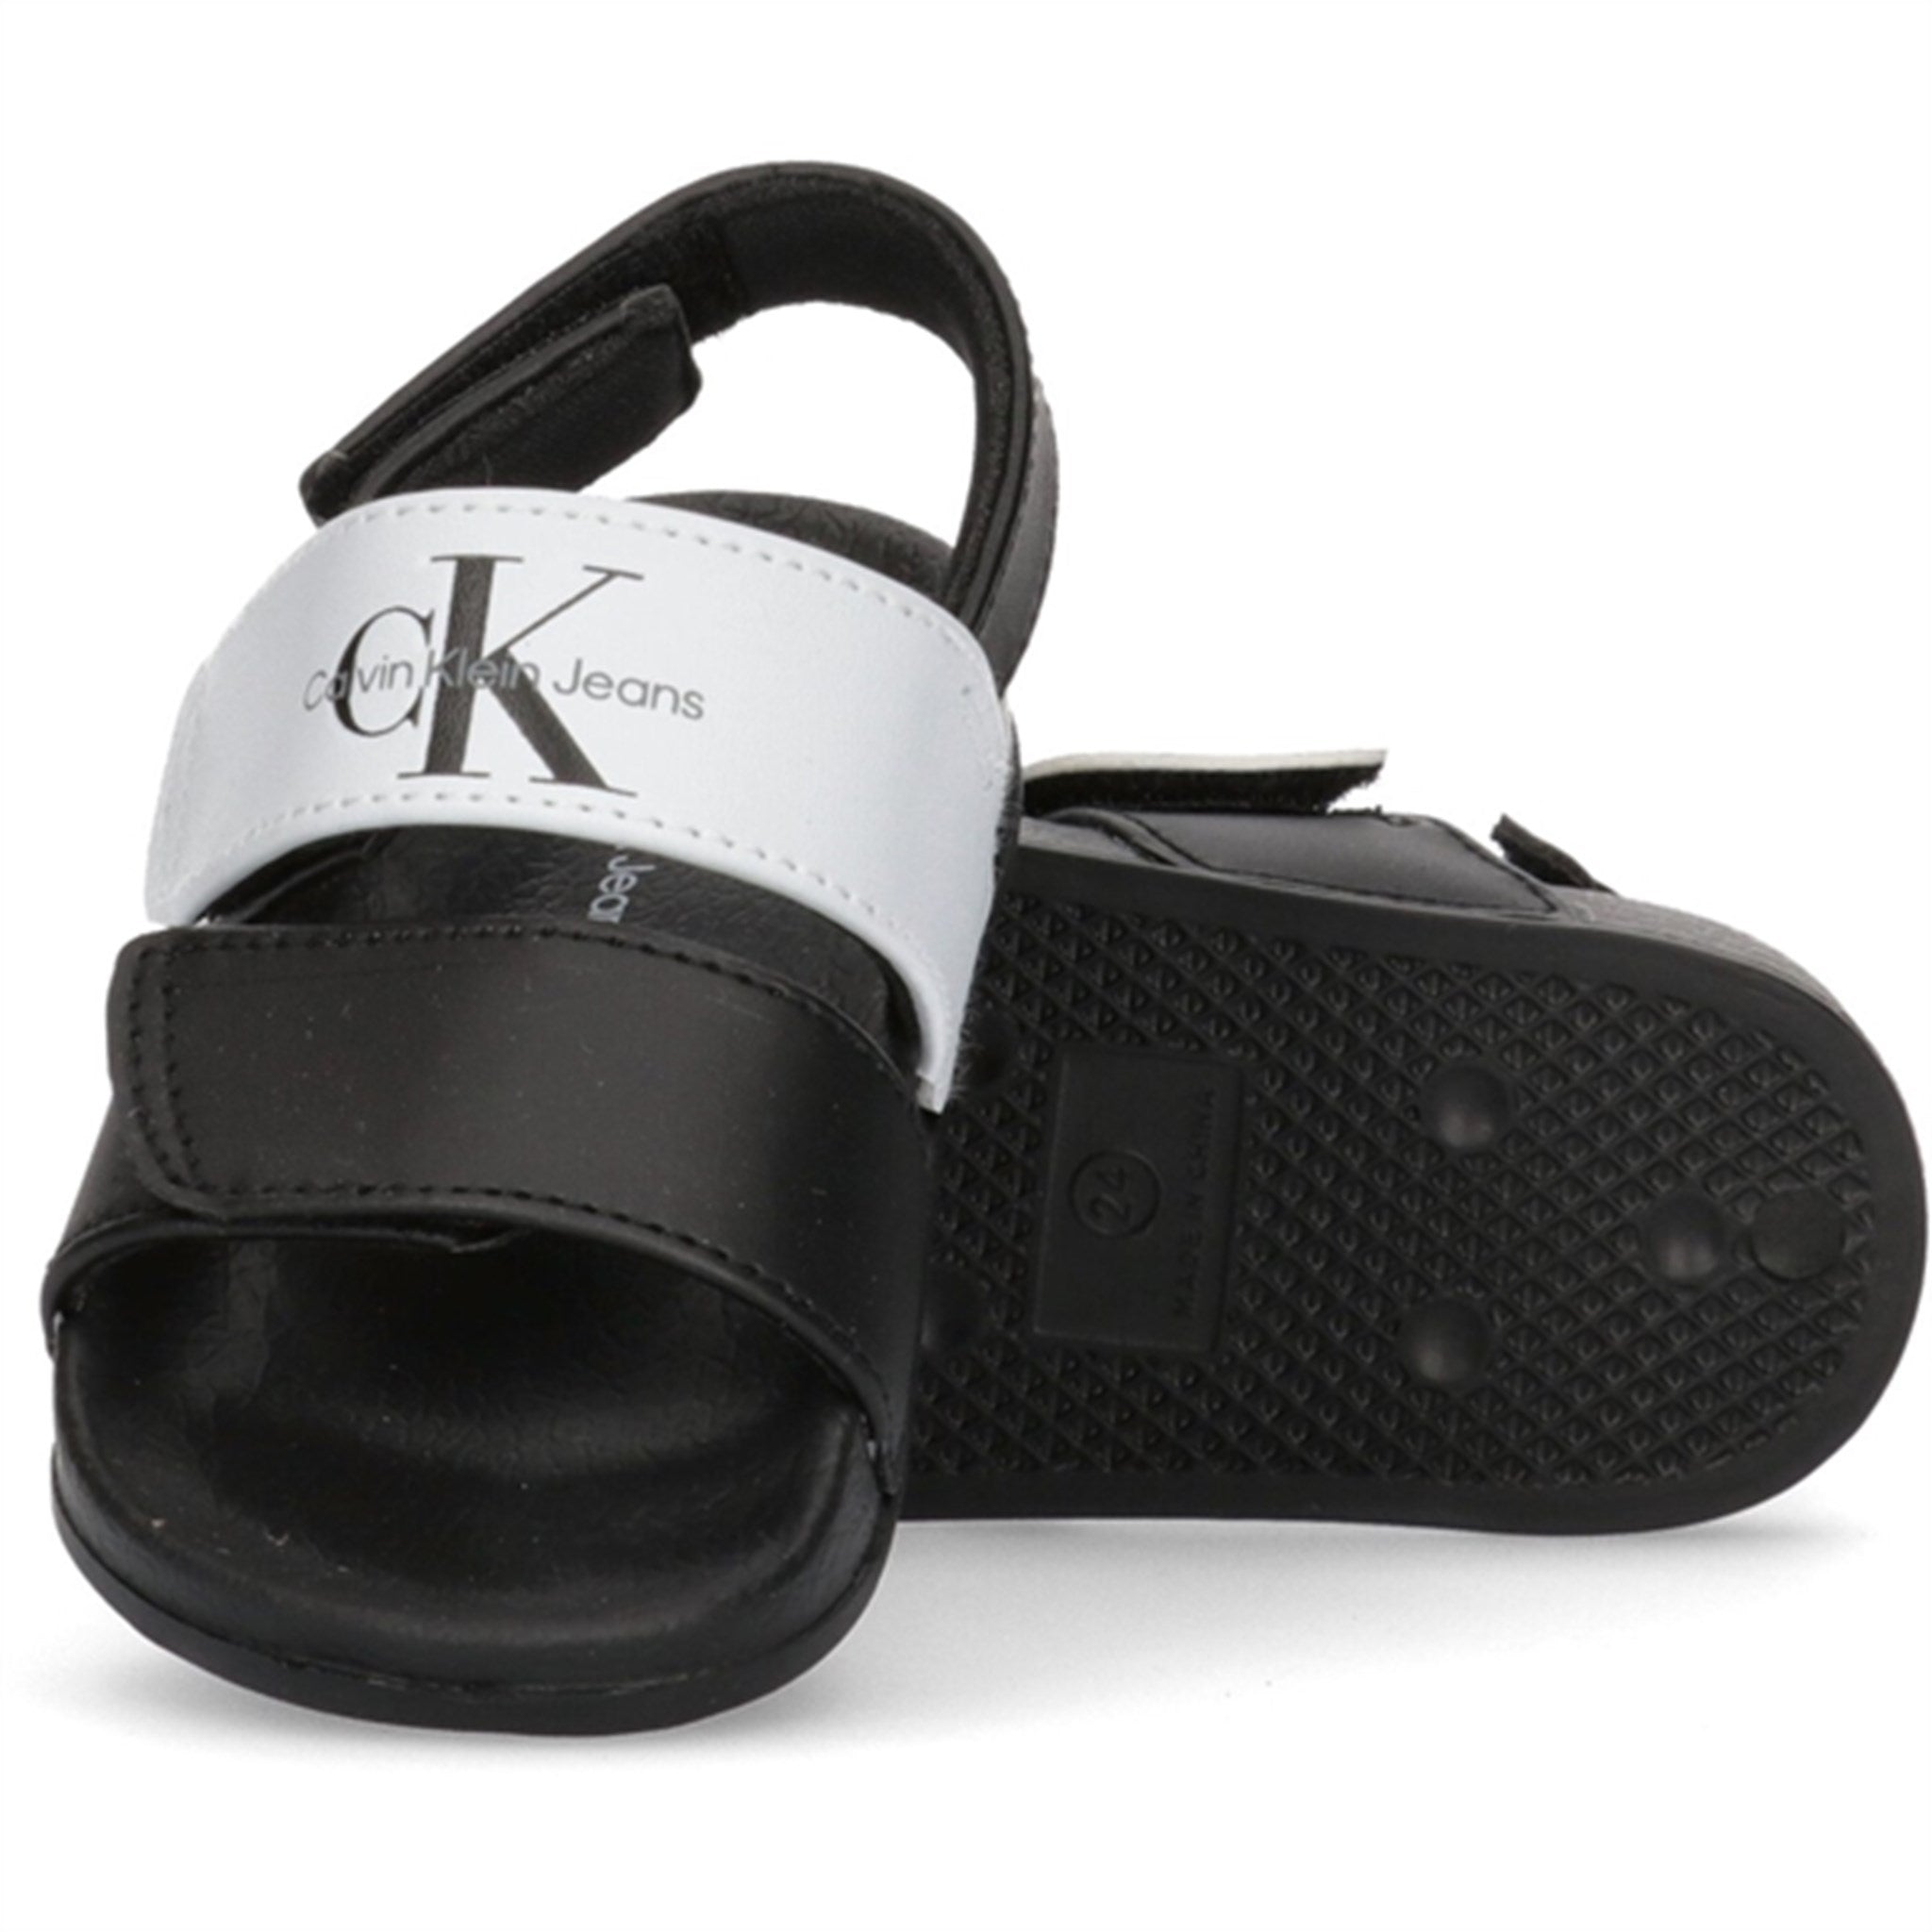 Calvin Klein Velcro Sandal Black/White